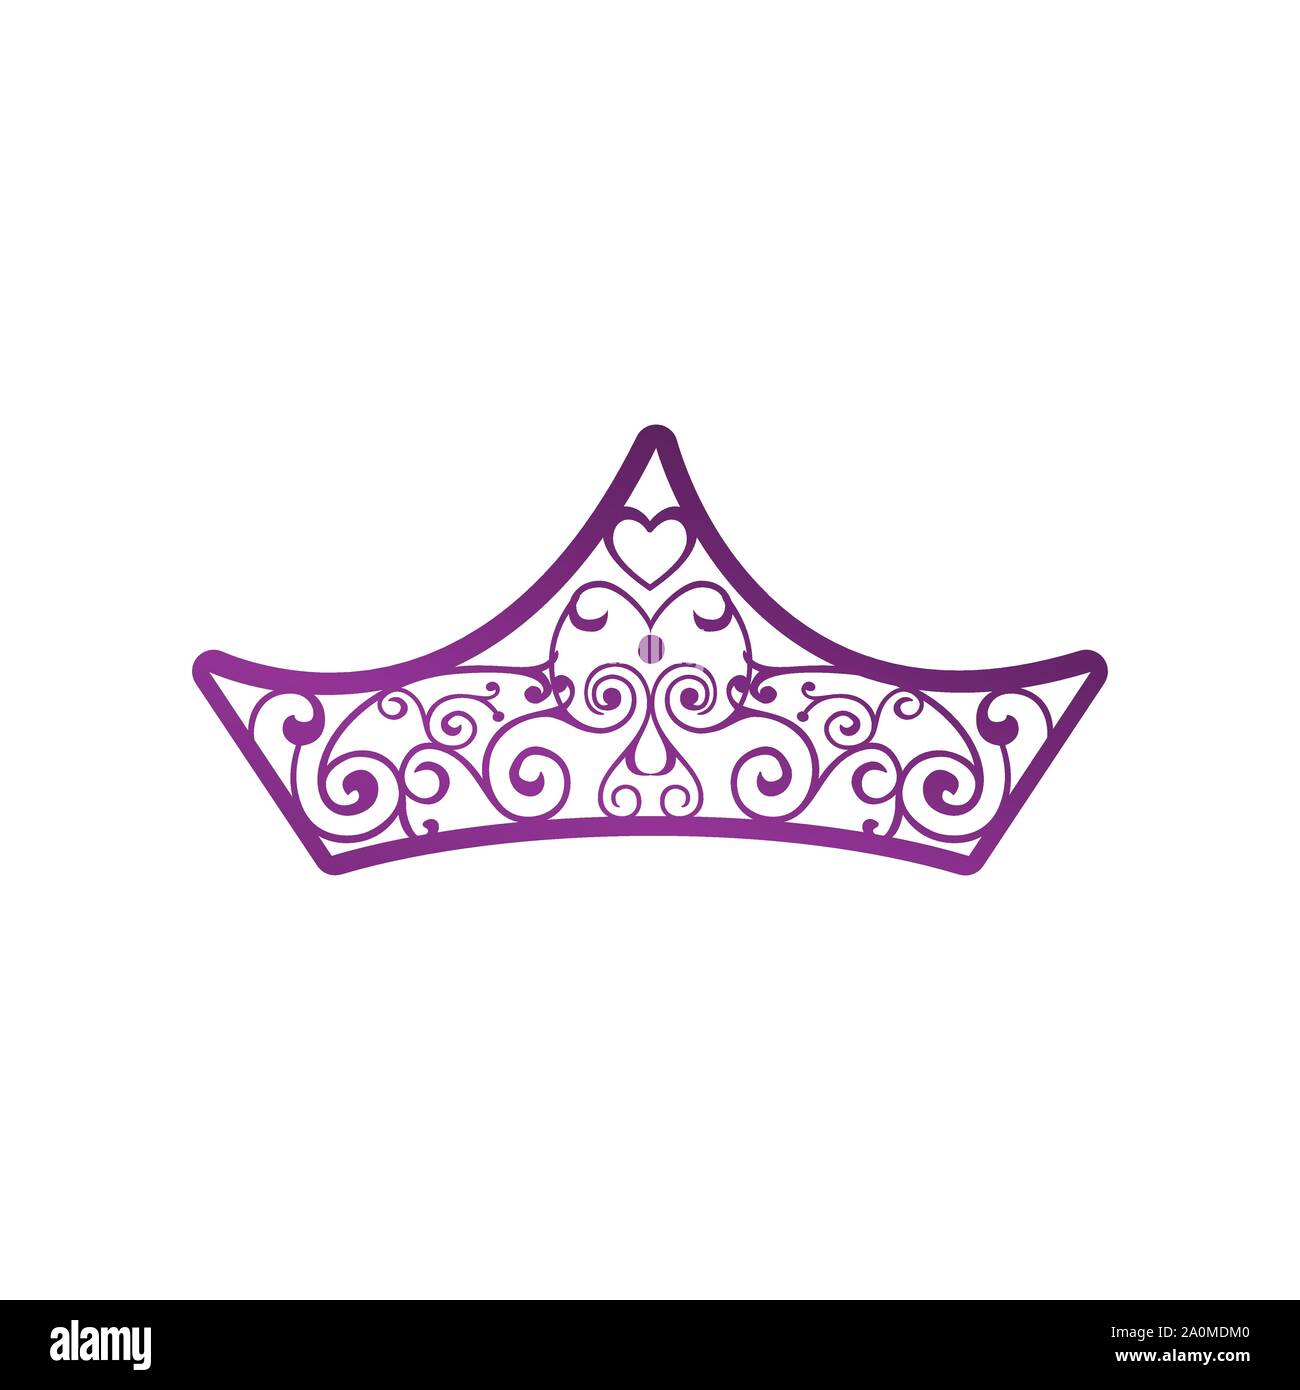 Abstract Crown Logo Vector Royal King Queen abstract design Stock Vector